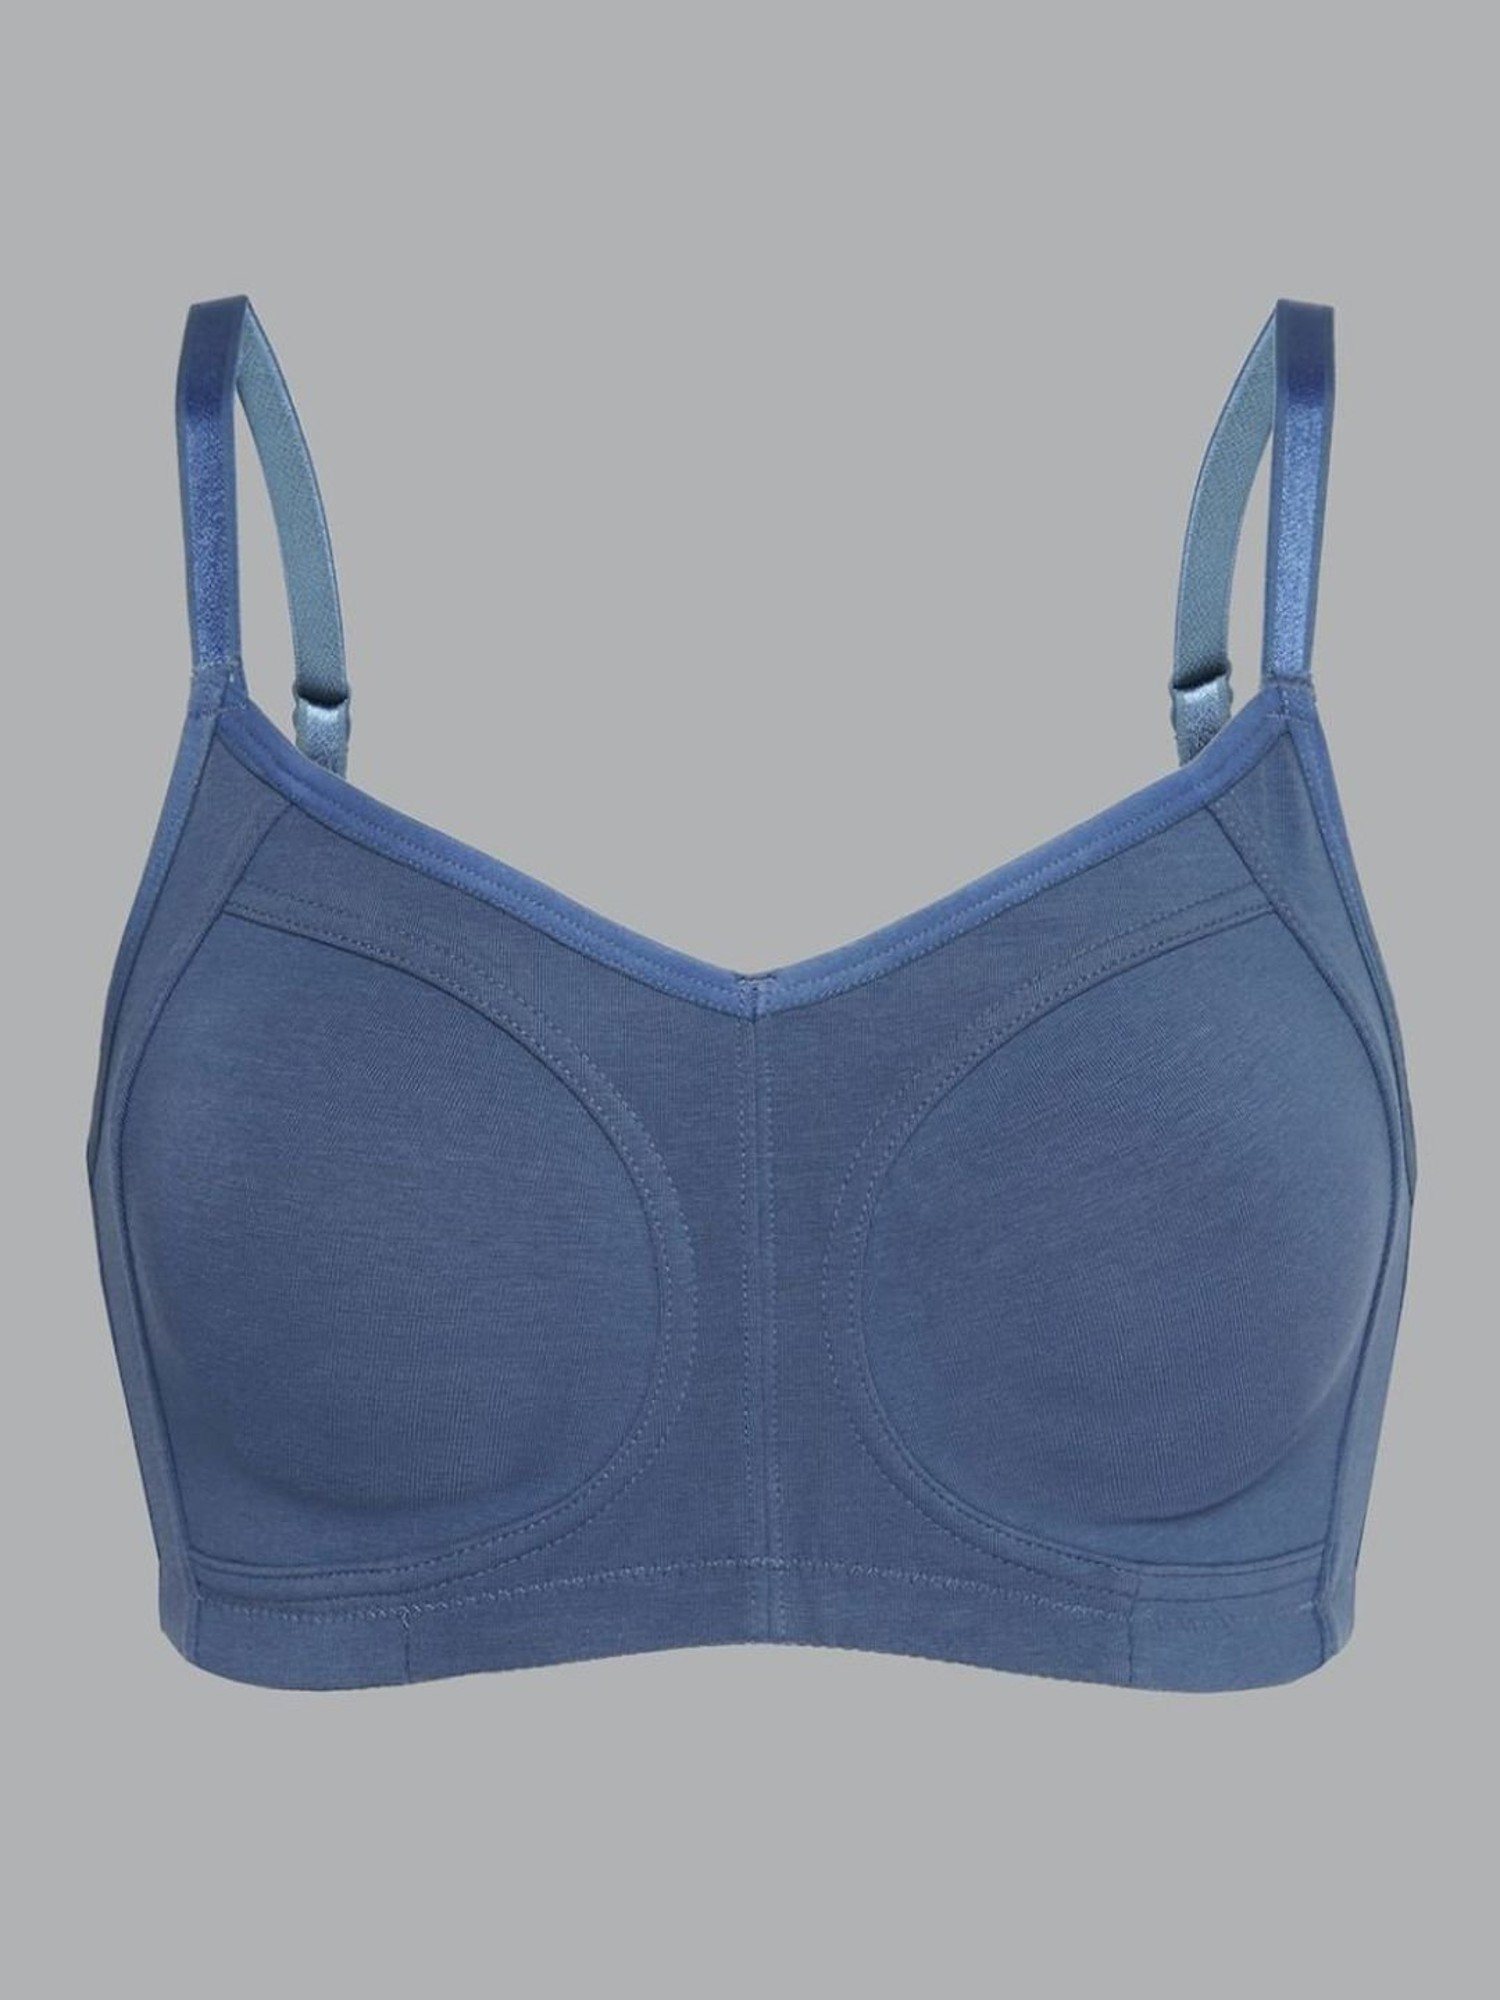 Buy Van Heusen Blue Cotton Full Coverage Bra for Women Online @ Tata CLiQ